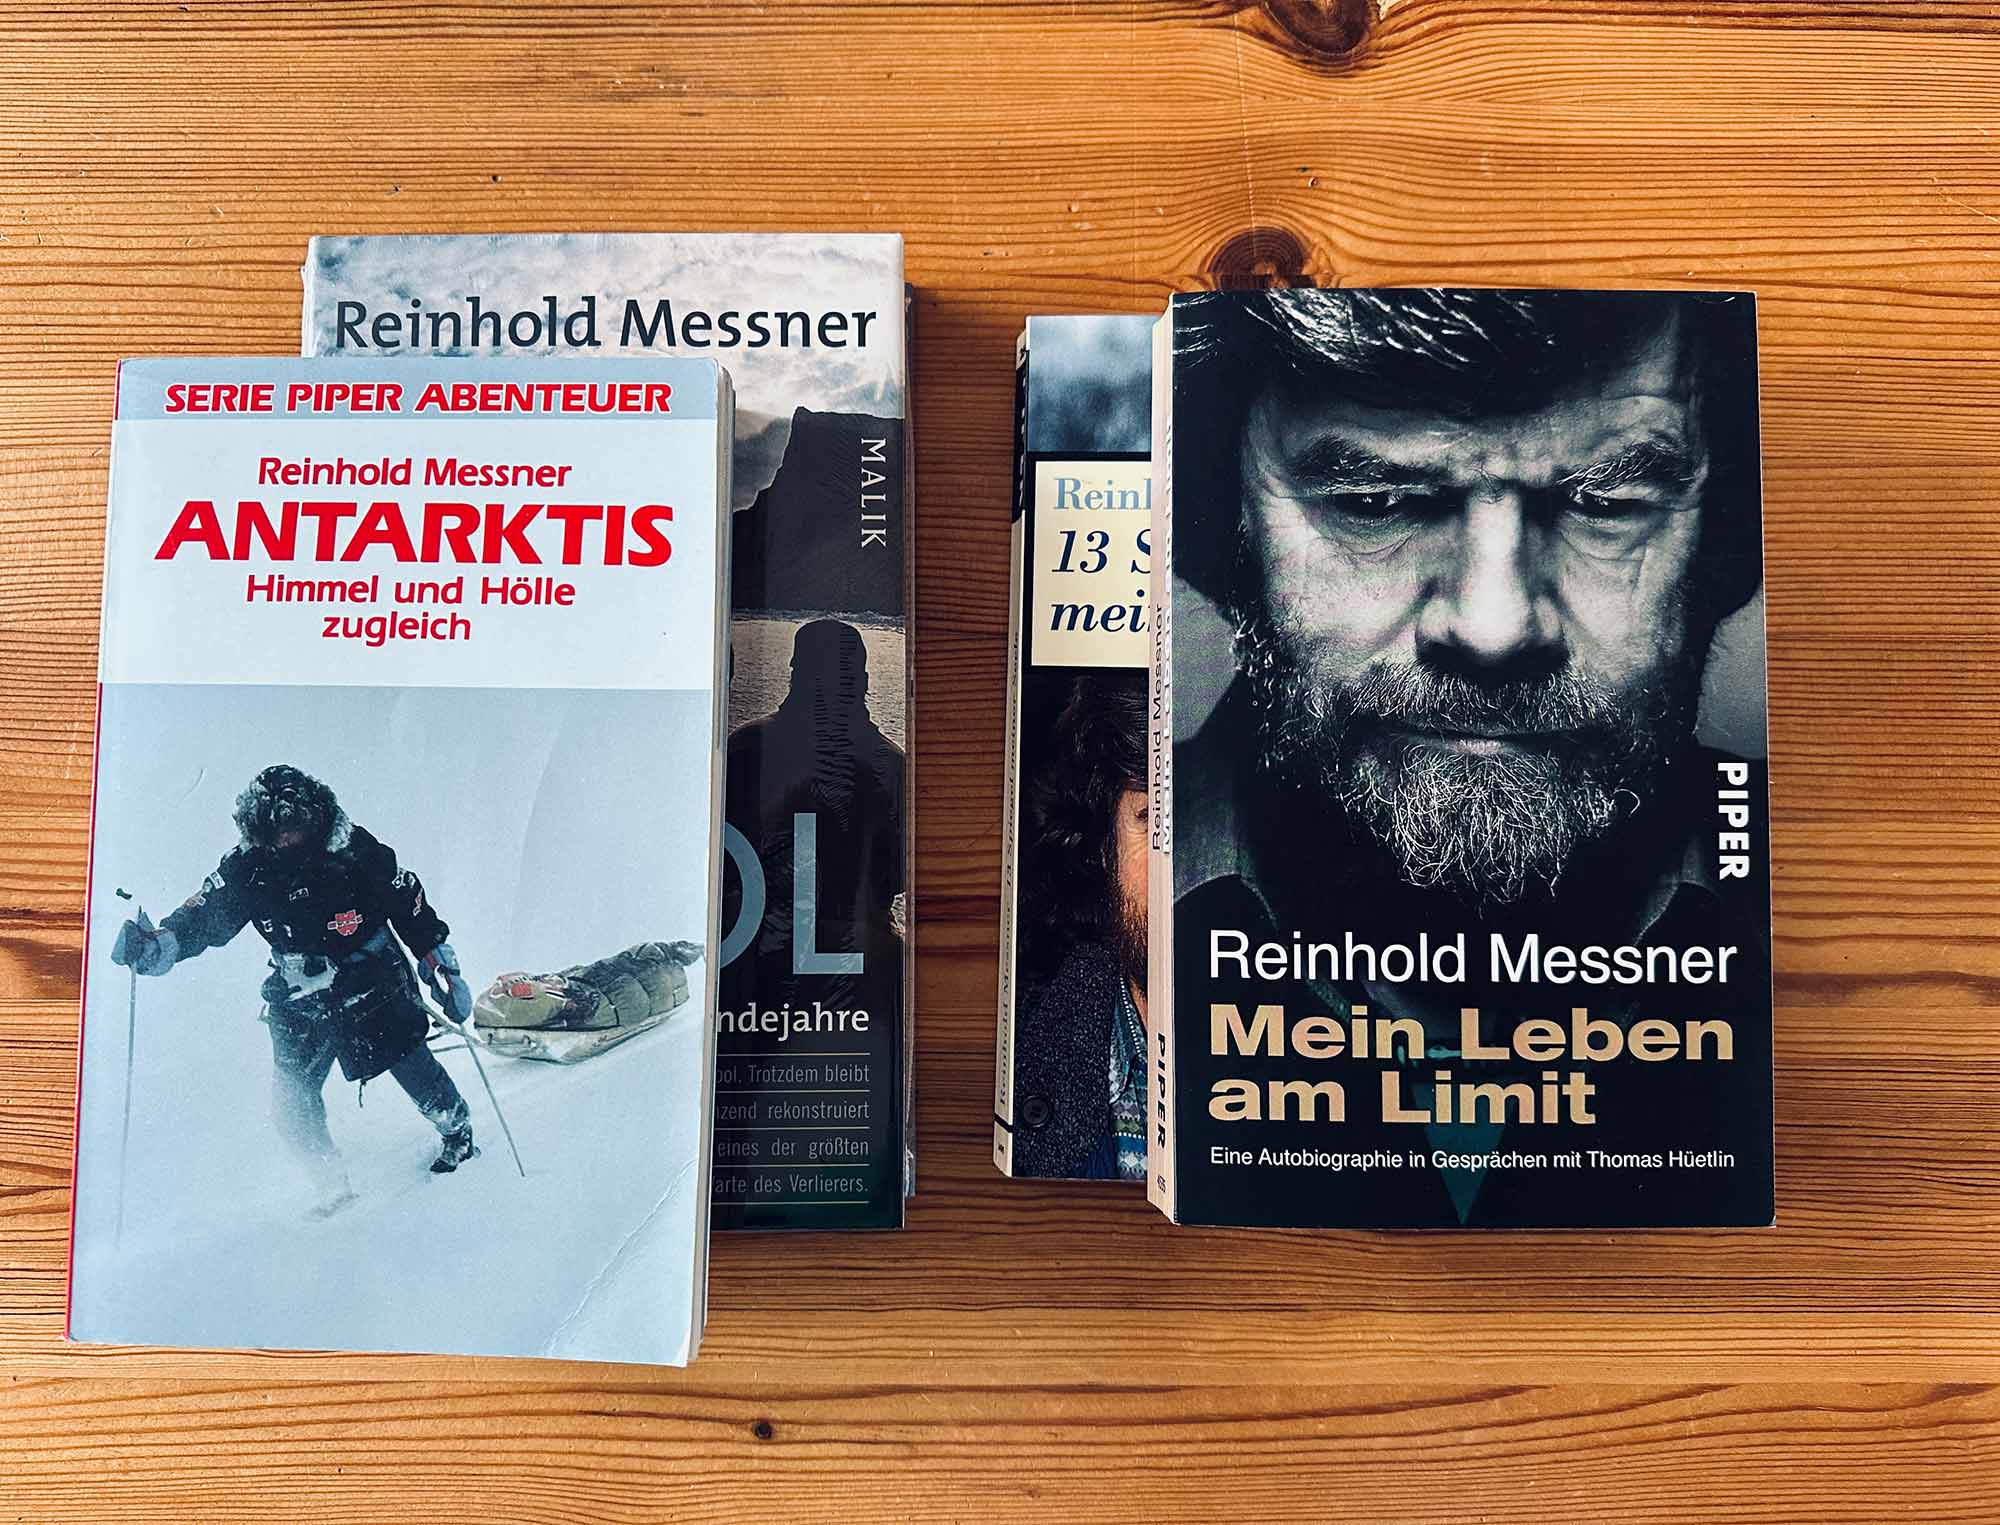 Im Bild ist eine Auswahl an Büchern von Reinhold Messner zu sehen.